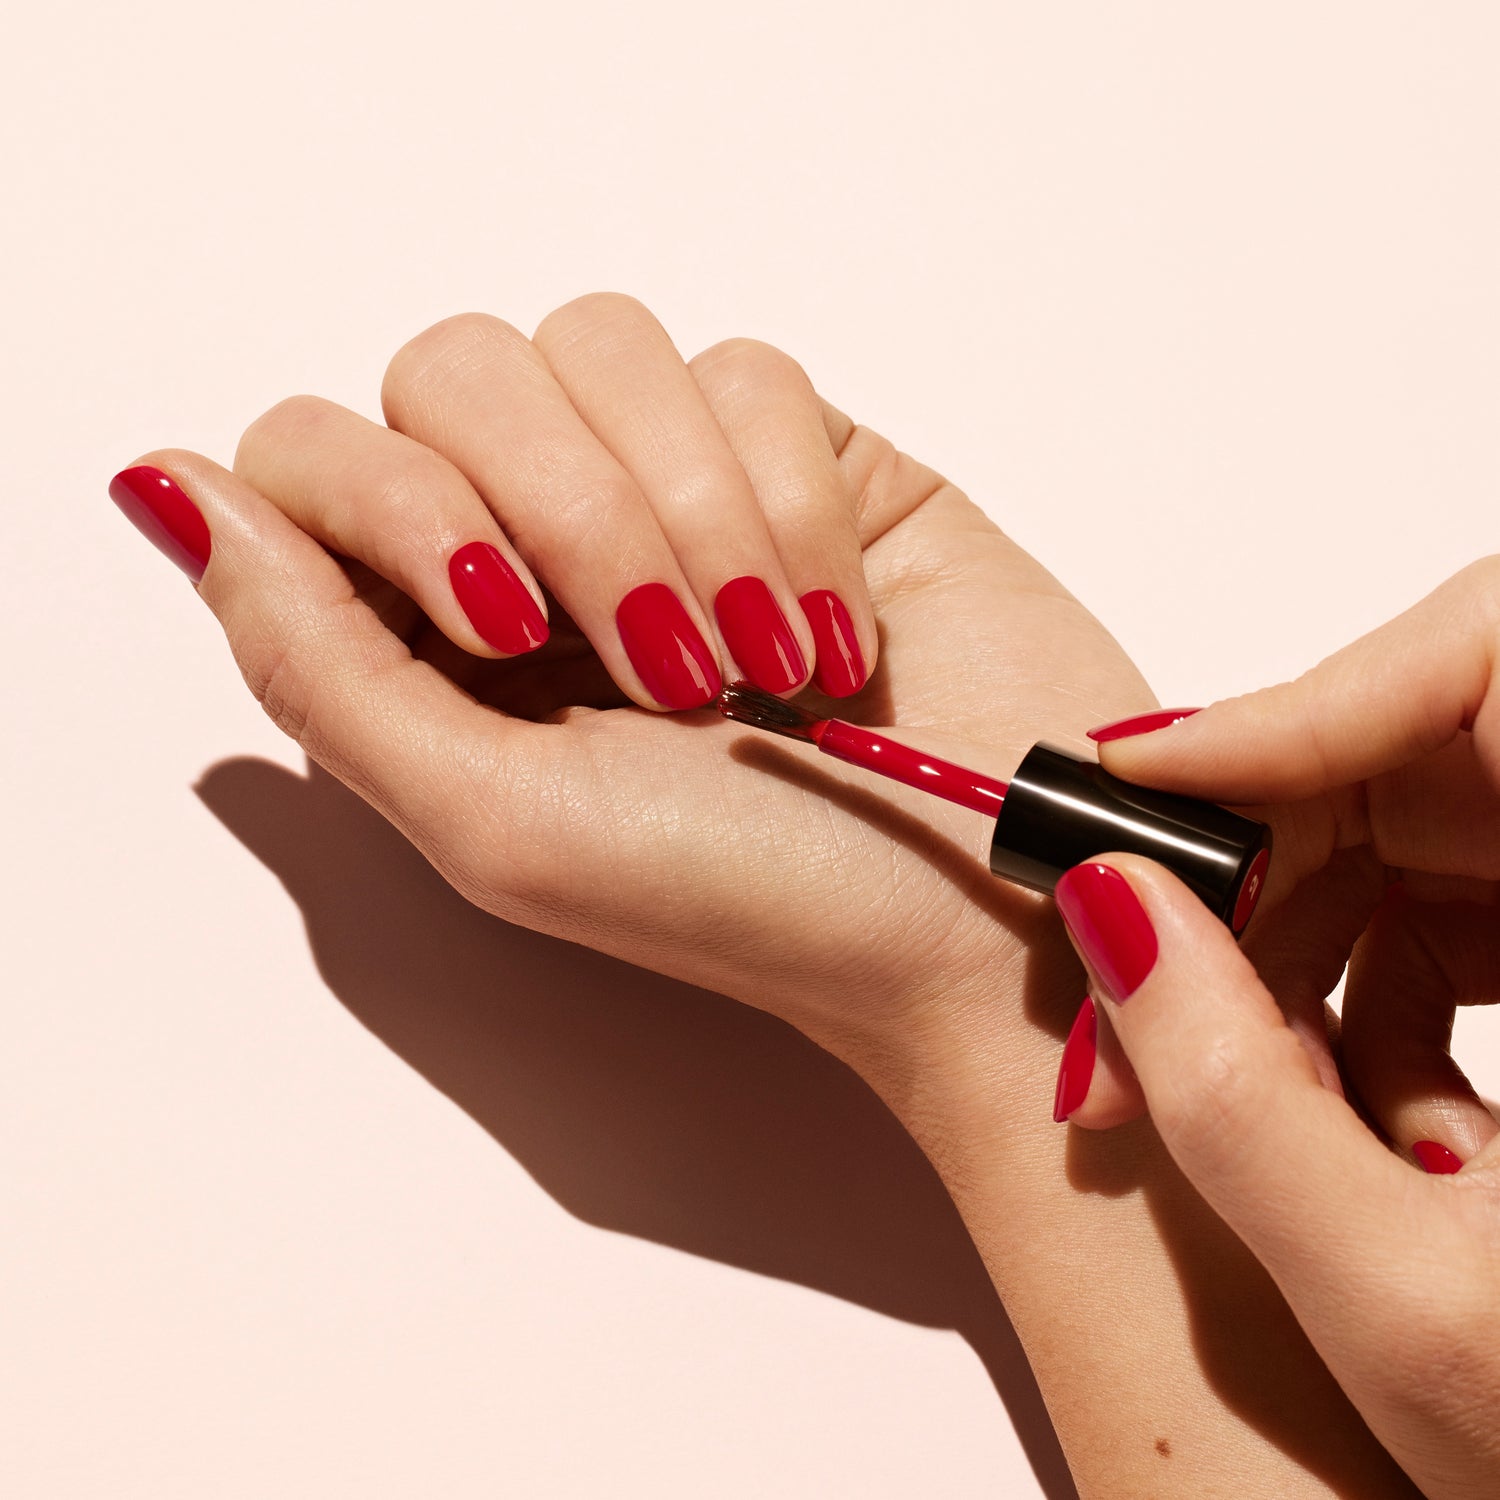 Gel polish damages your nails - true or false?